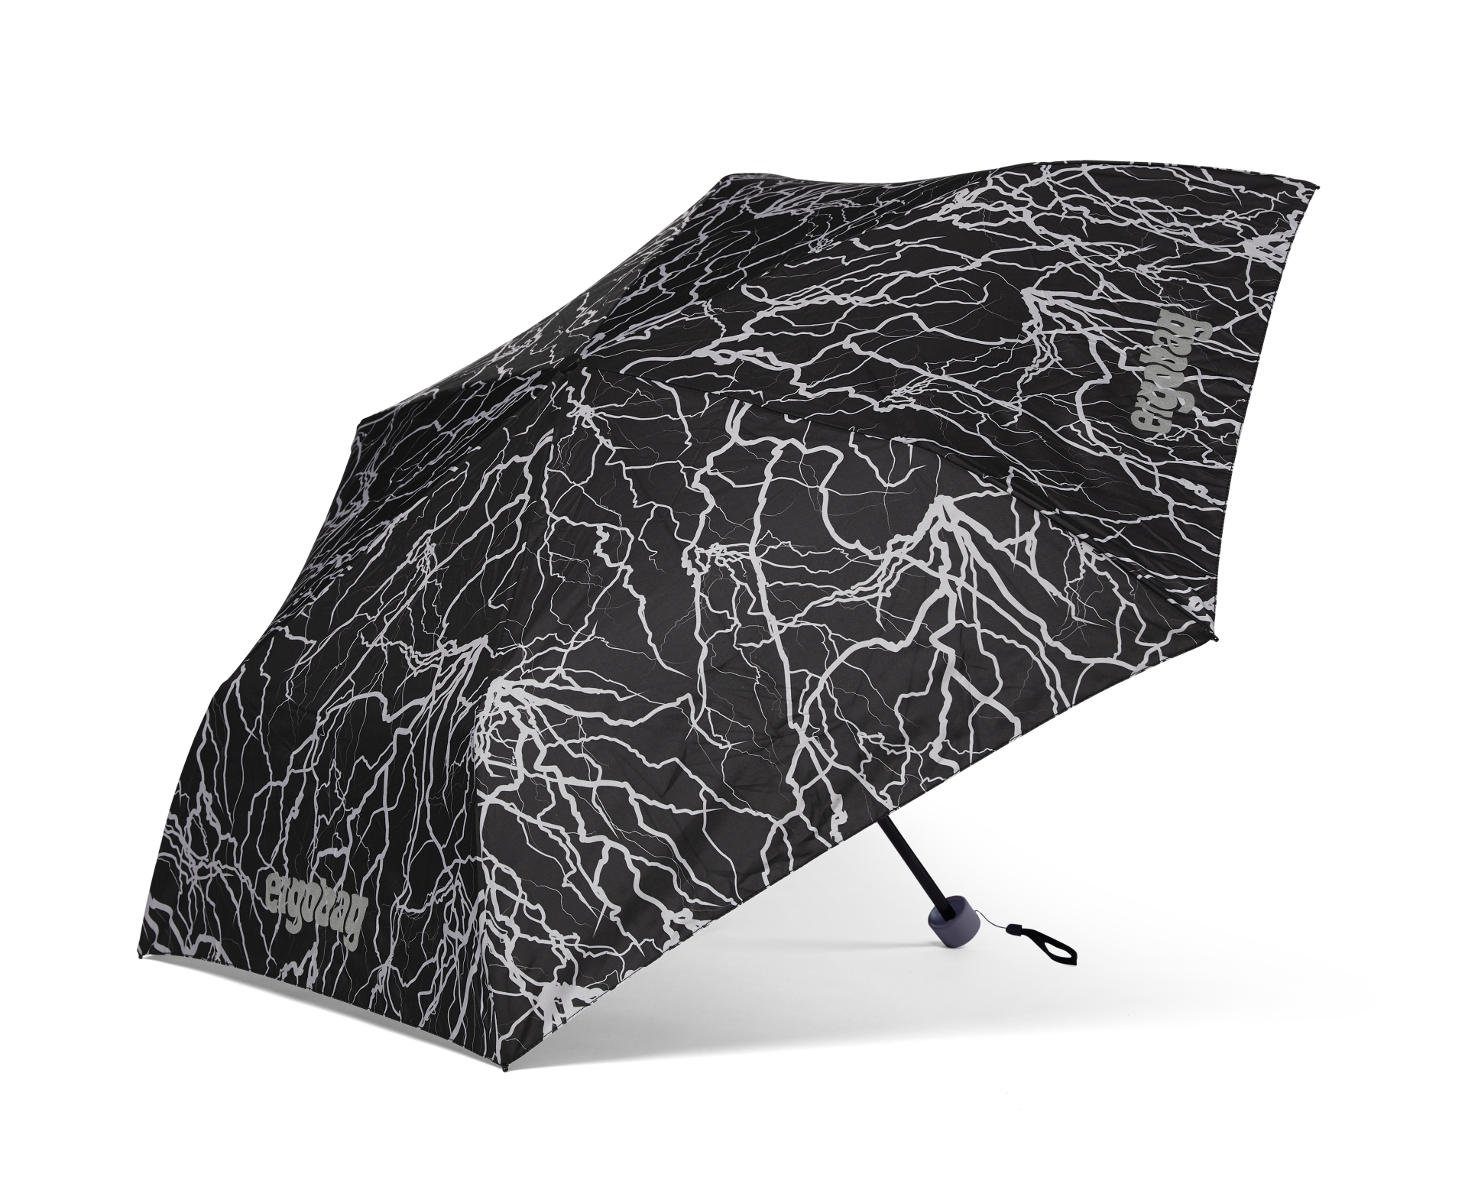 ReflektBär ergobag Super Taschenregenschirm Refektierend Kinder-Regenschirm,